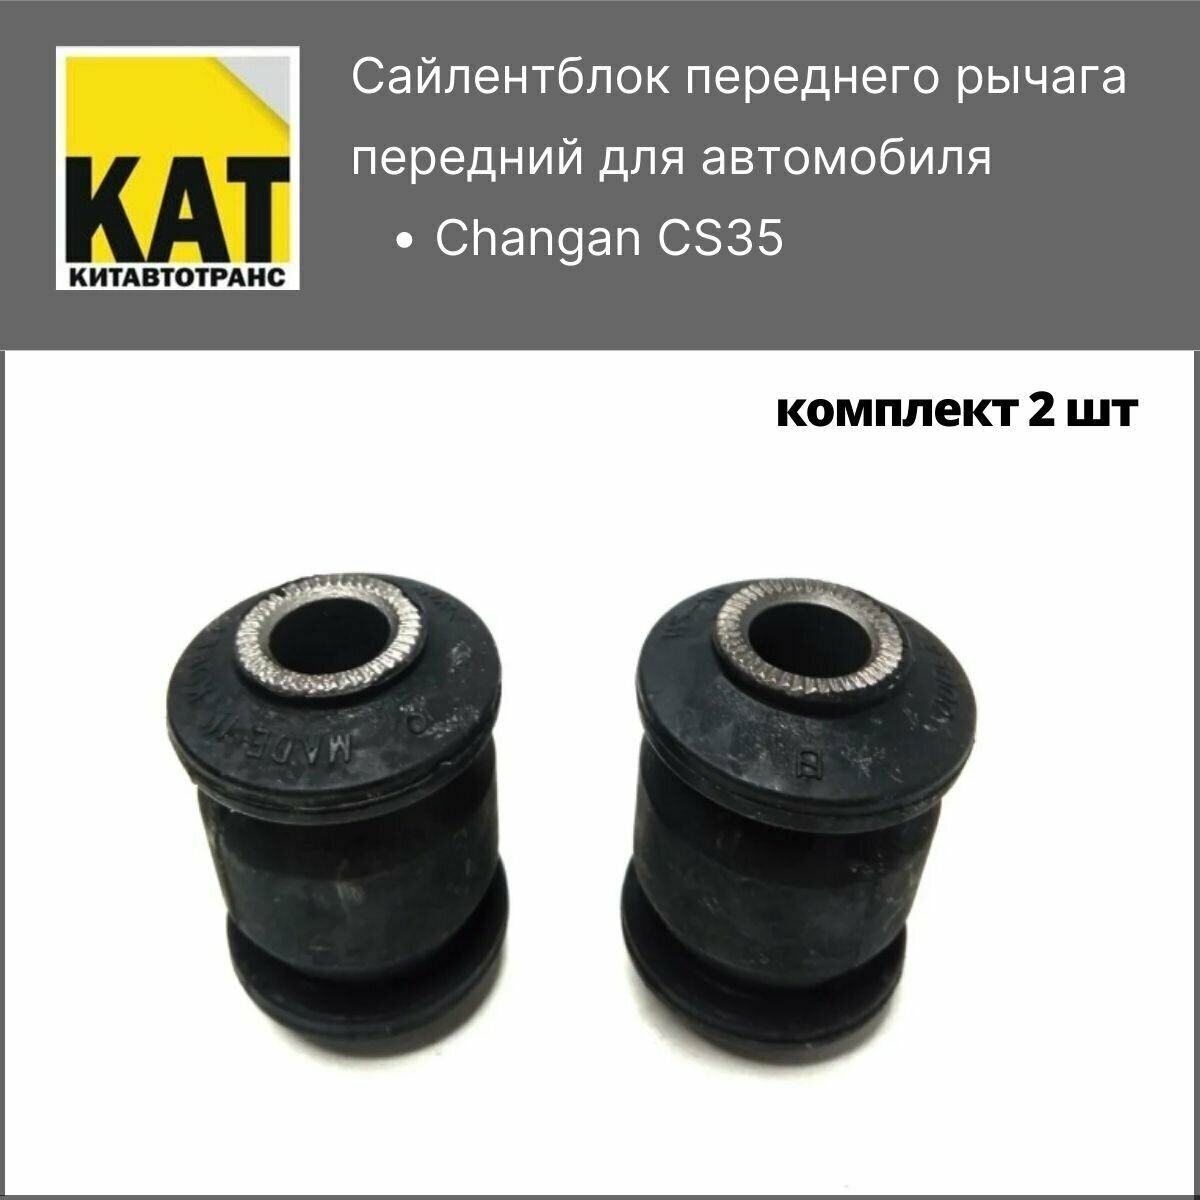 Сайлентблоки передних рычагов передние(малые) Чанган ЦС35 (Changan CS35) комплект 2шт CTR